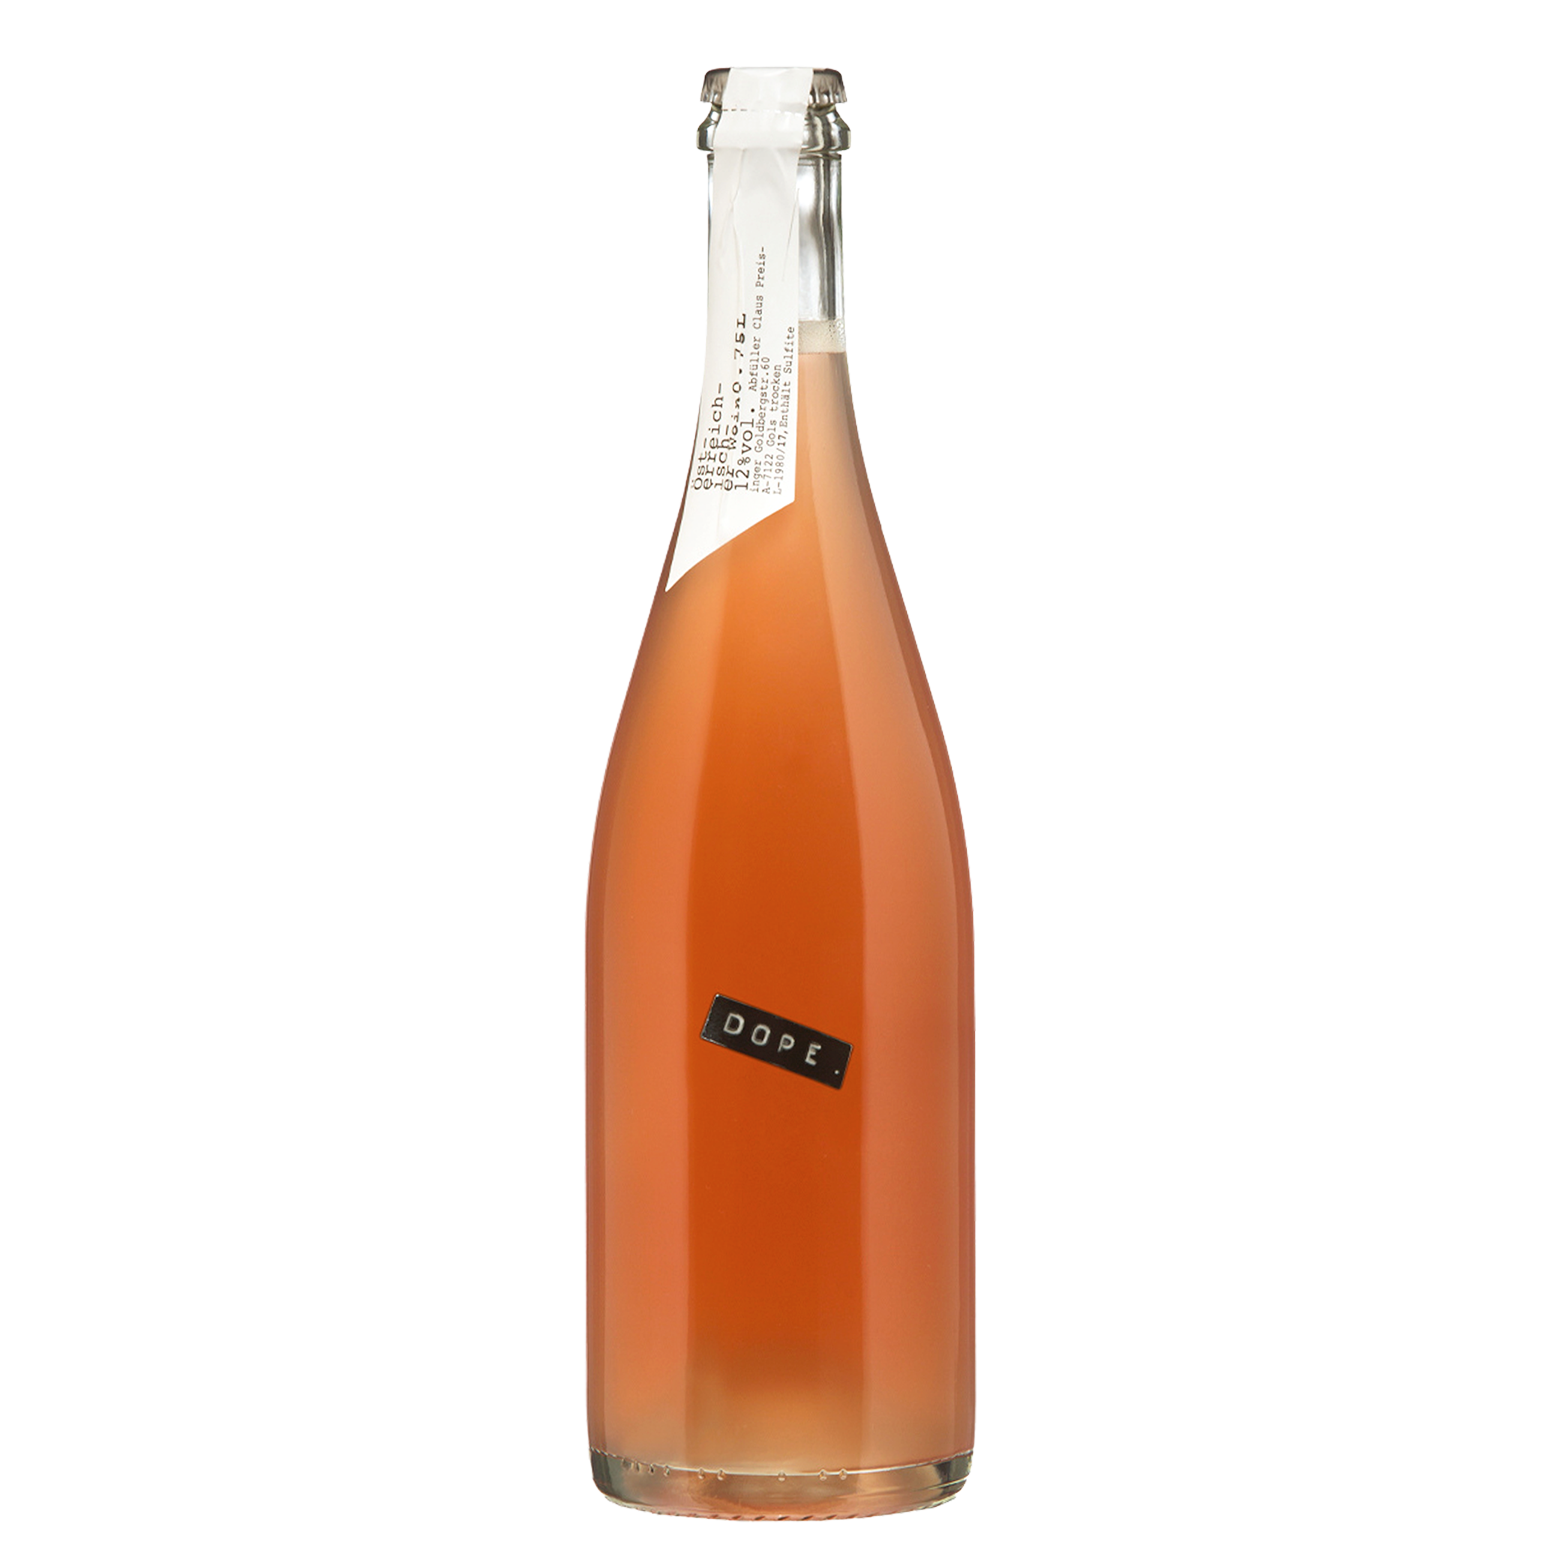 CLAUS PREISINGER 很棒粉紅酒